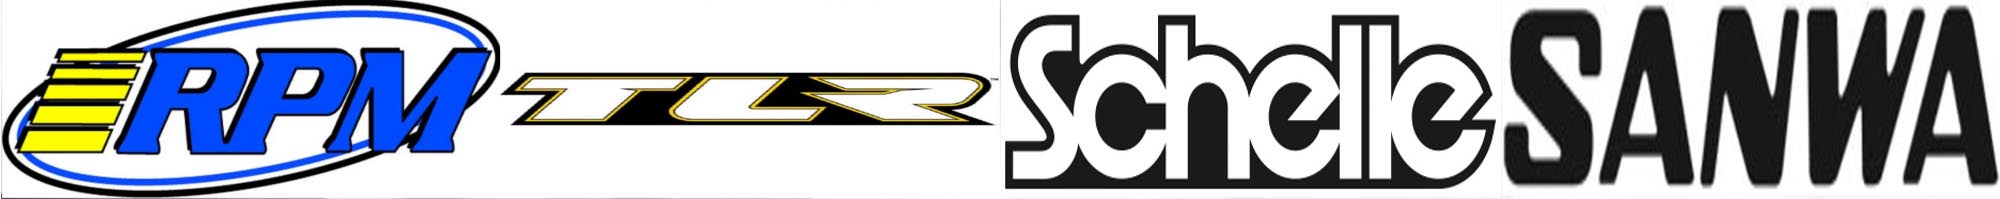 RPM, TLR, Schelle, Sanwa logos